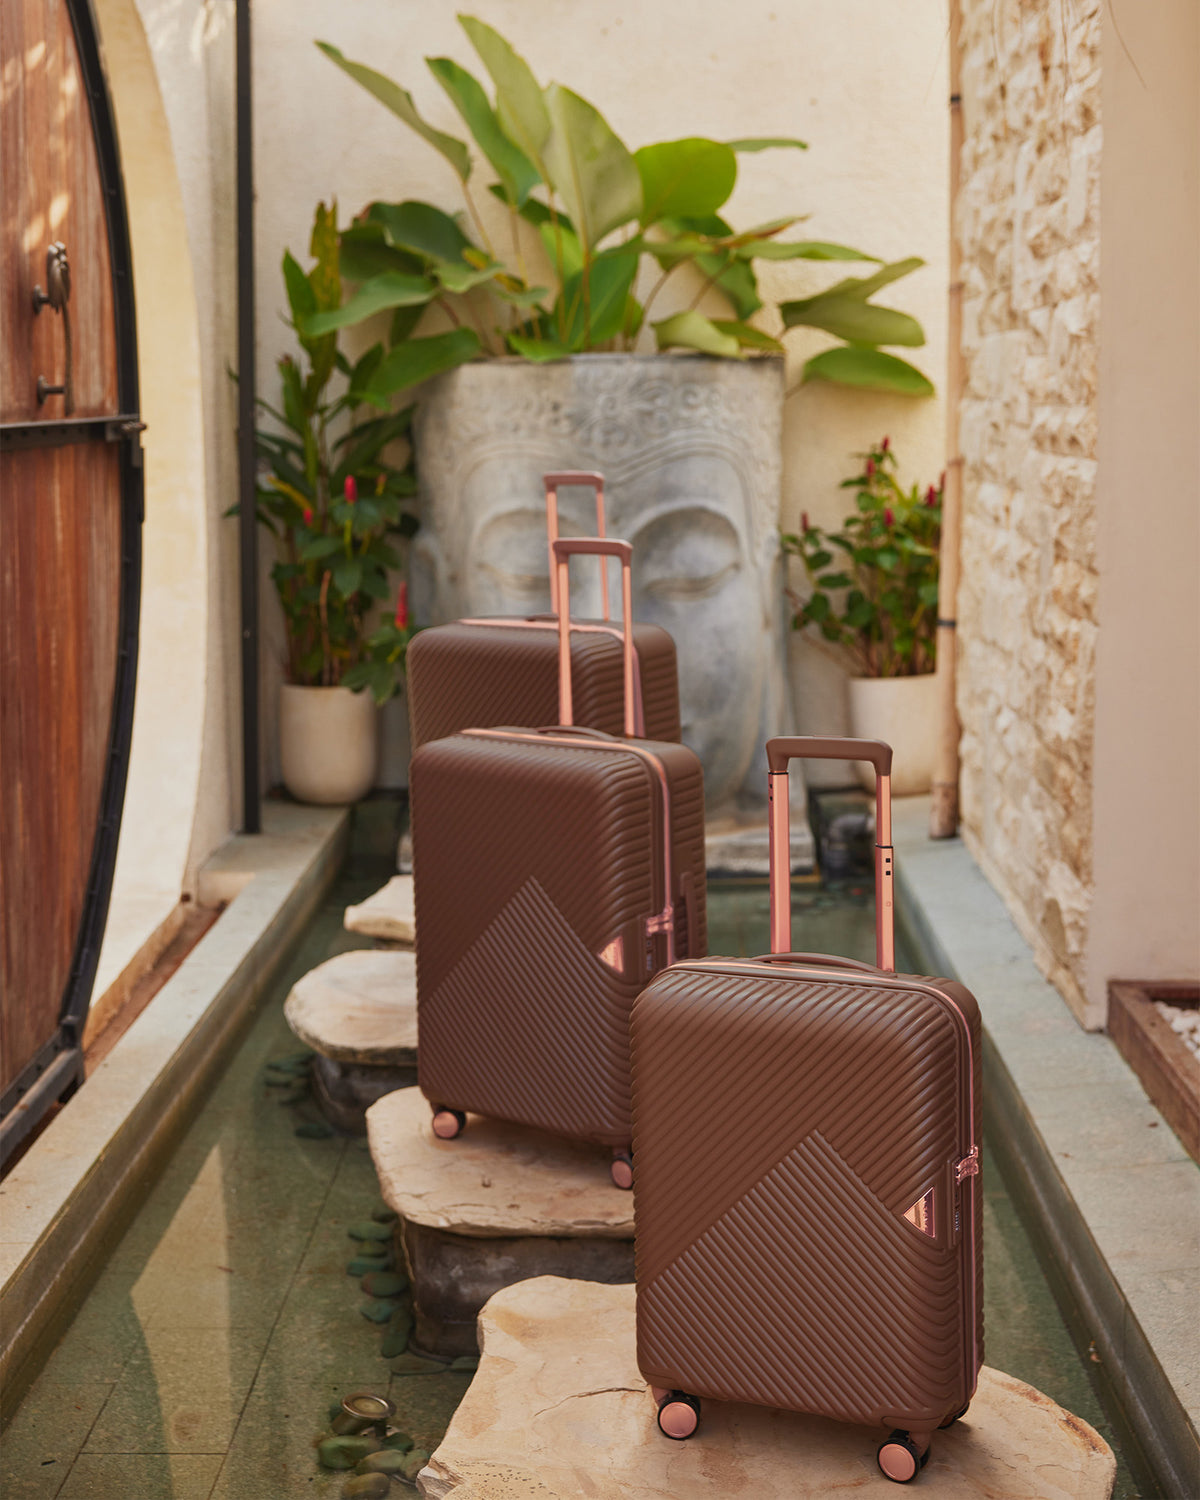 Suitcases- Set of Cabin, Medium, Large